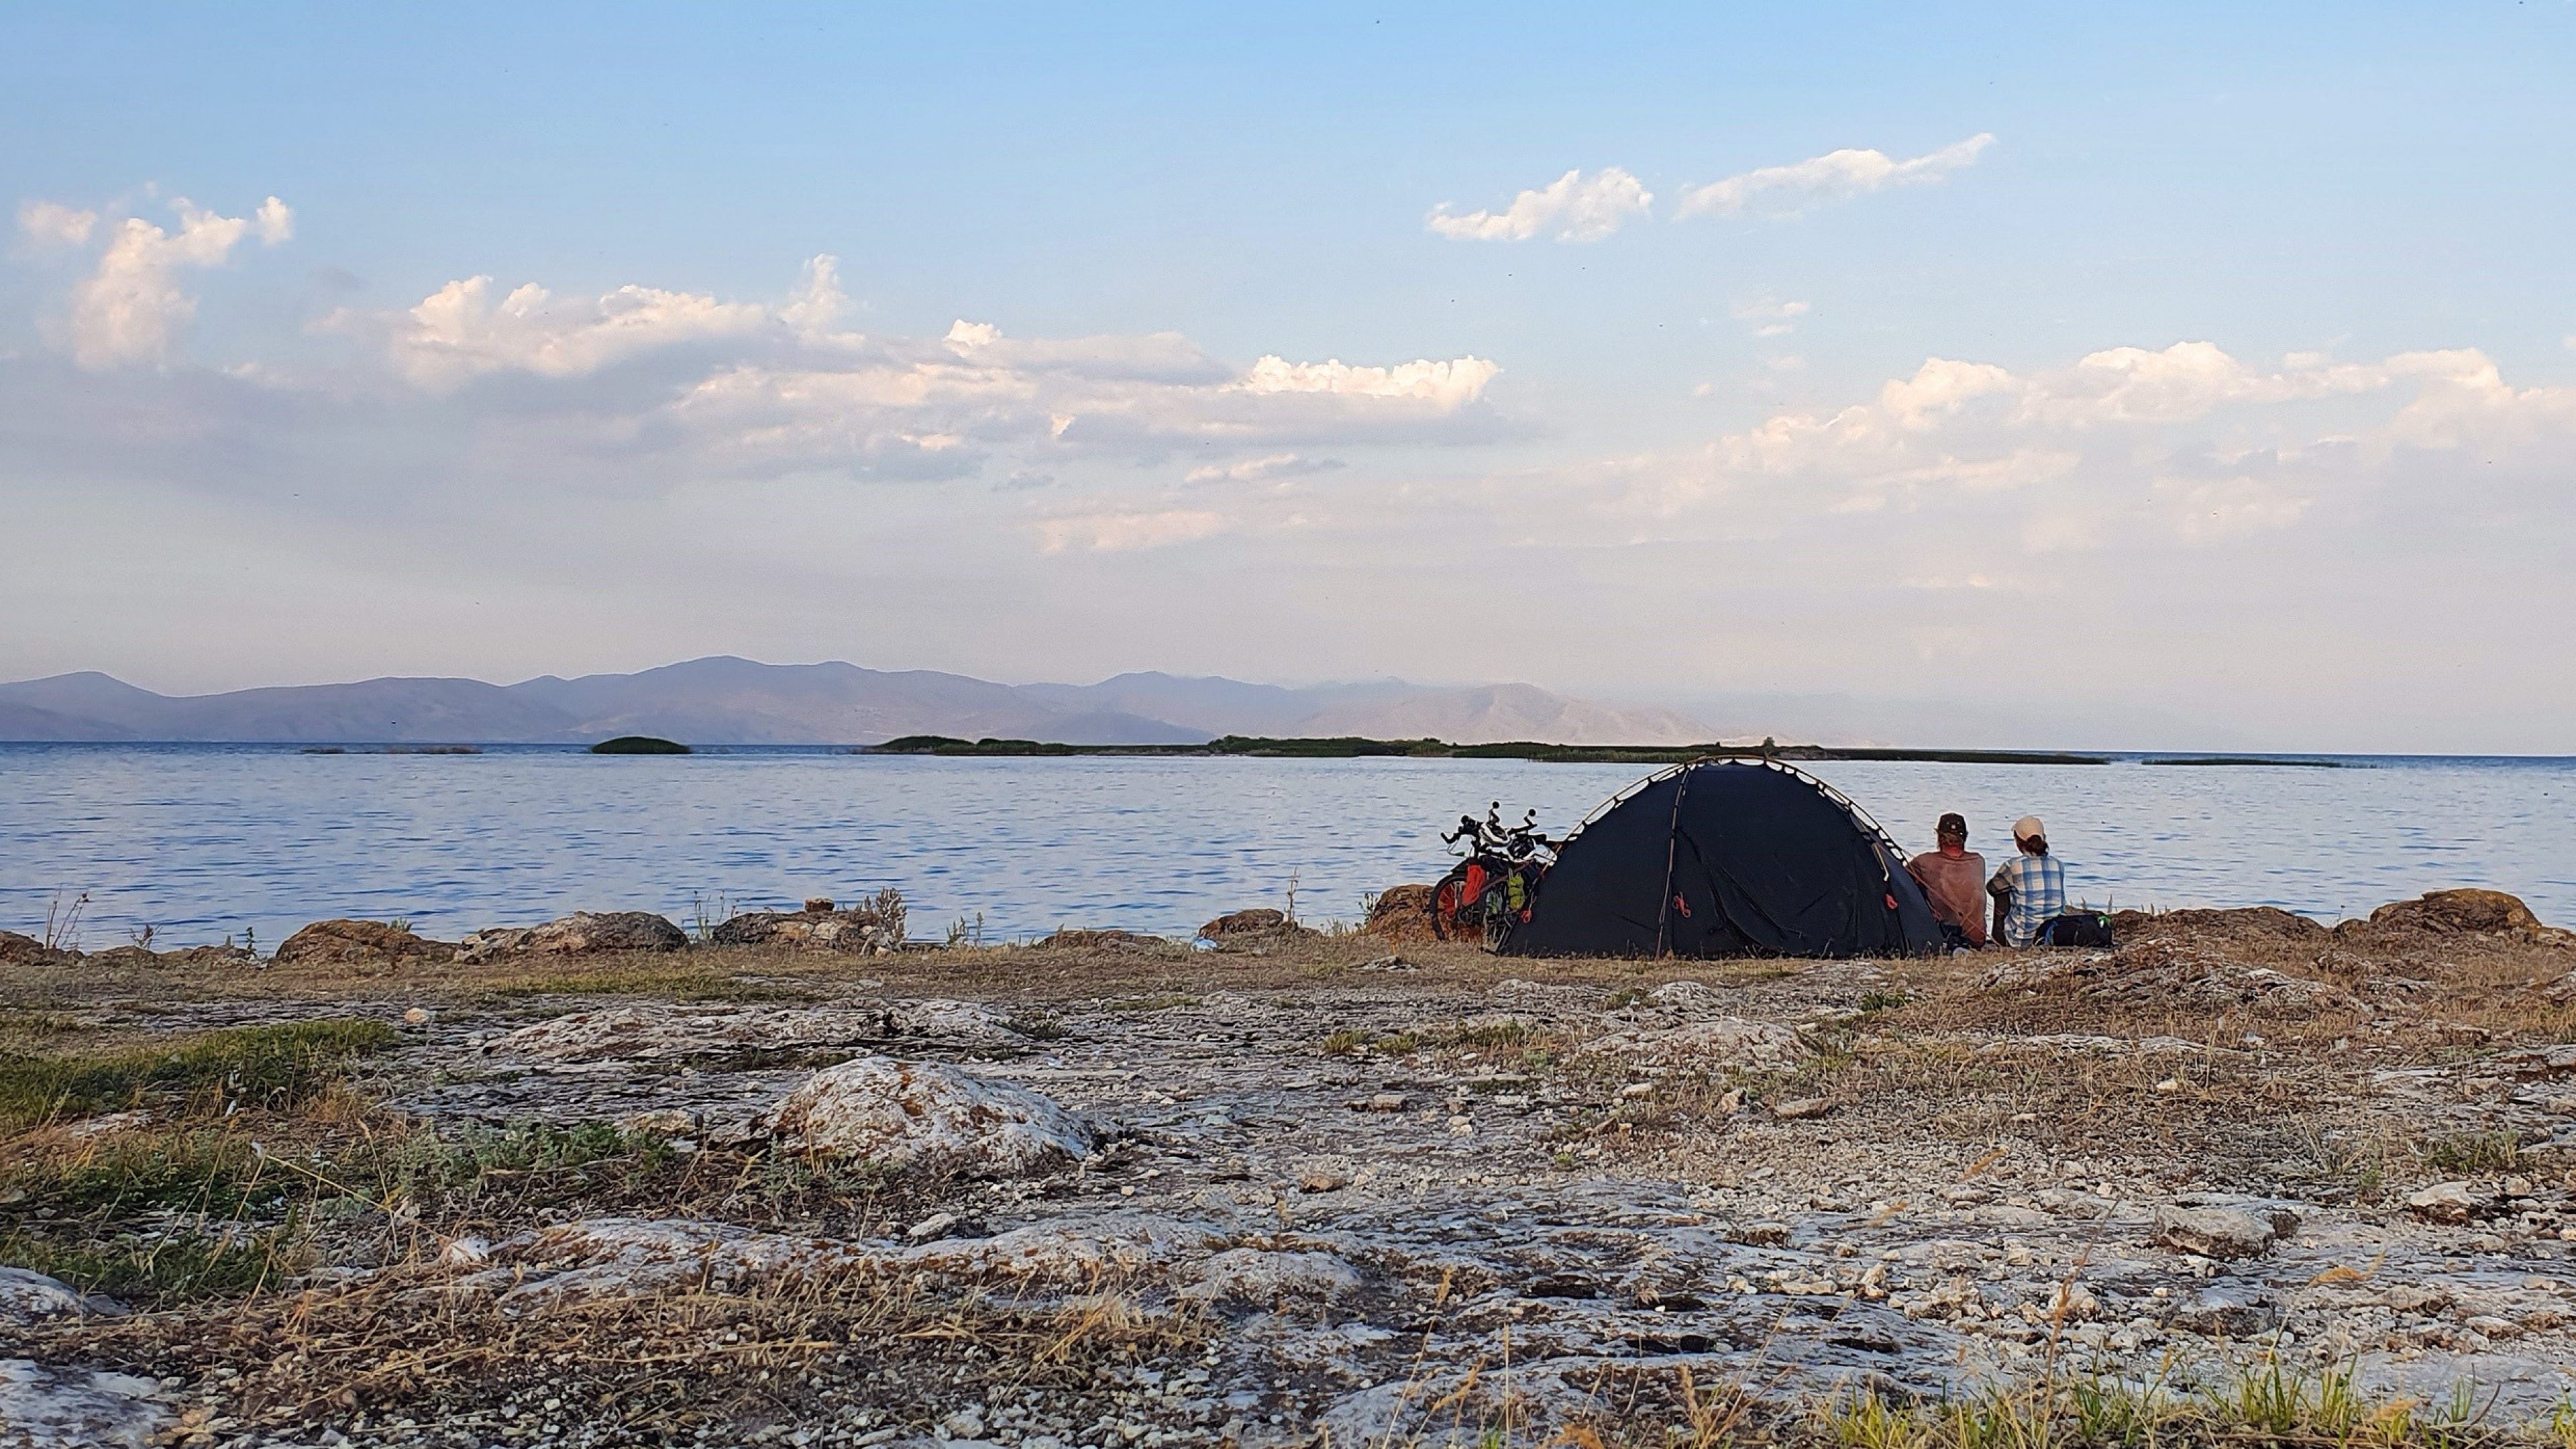 Zwei Abenteurer auf Fahrrädern haben ihr Zelt am See aufgeschlagen und genießen die herrliche Kulisse. Für sie ist die Welt ihr Zuhause und das Leben eine Reise voller Abenteuer und Entdeckungen.